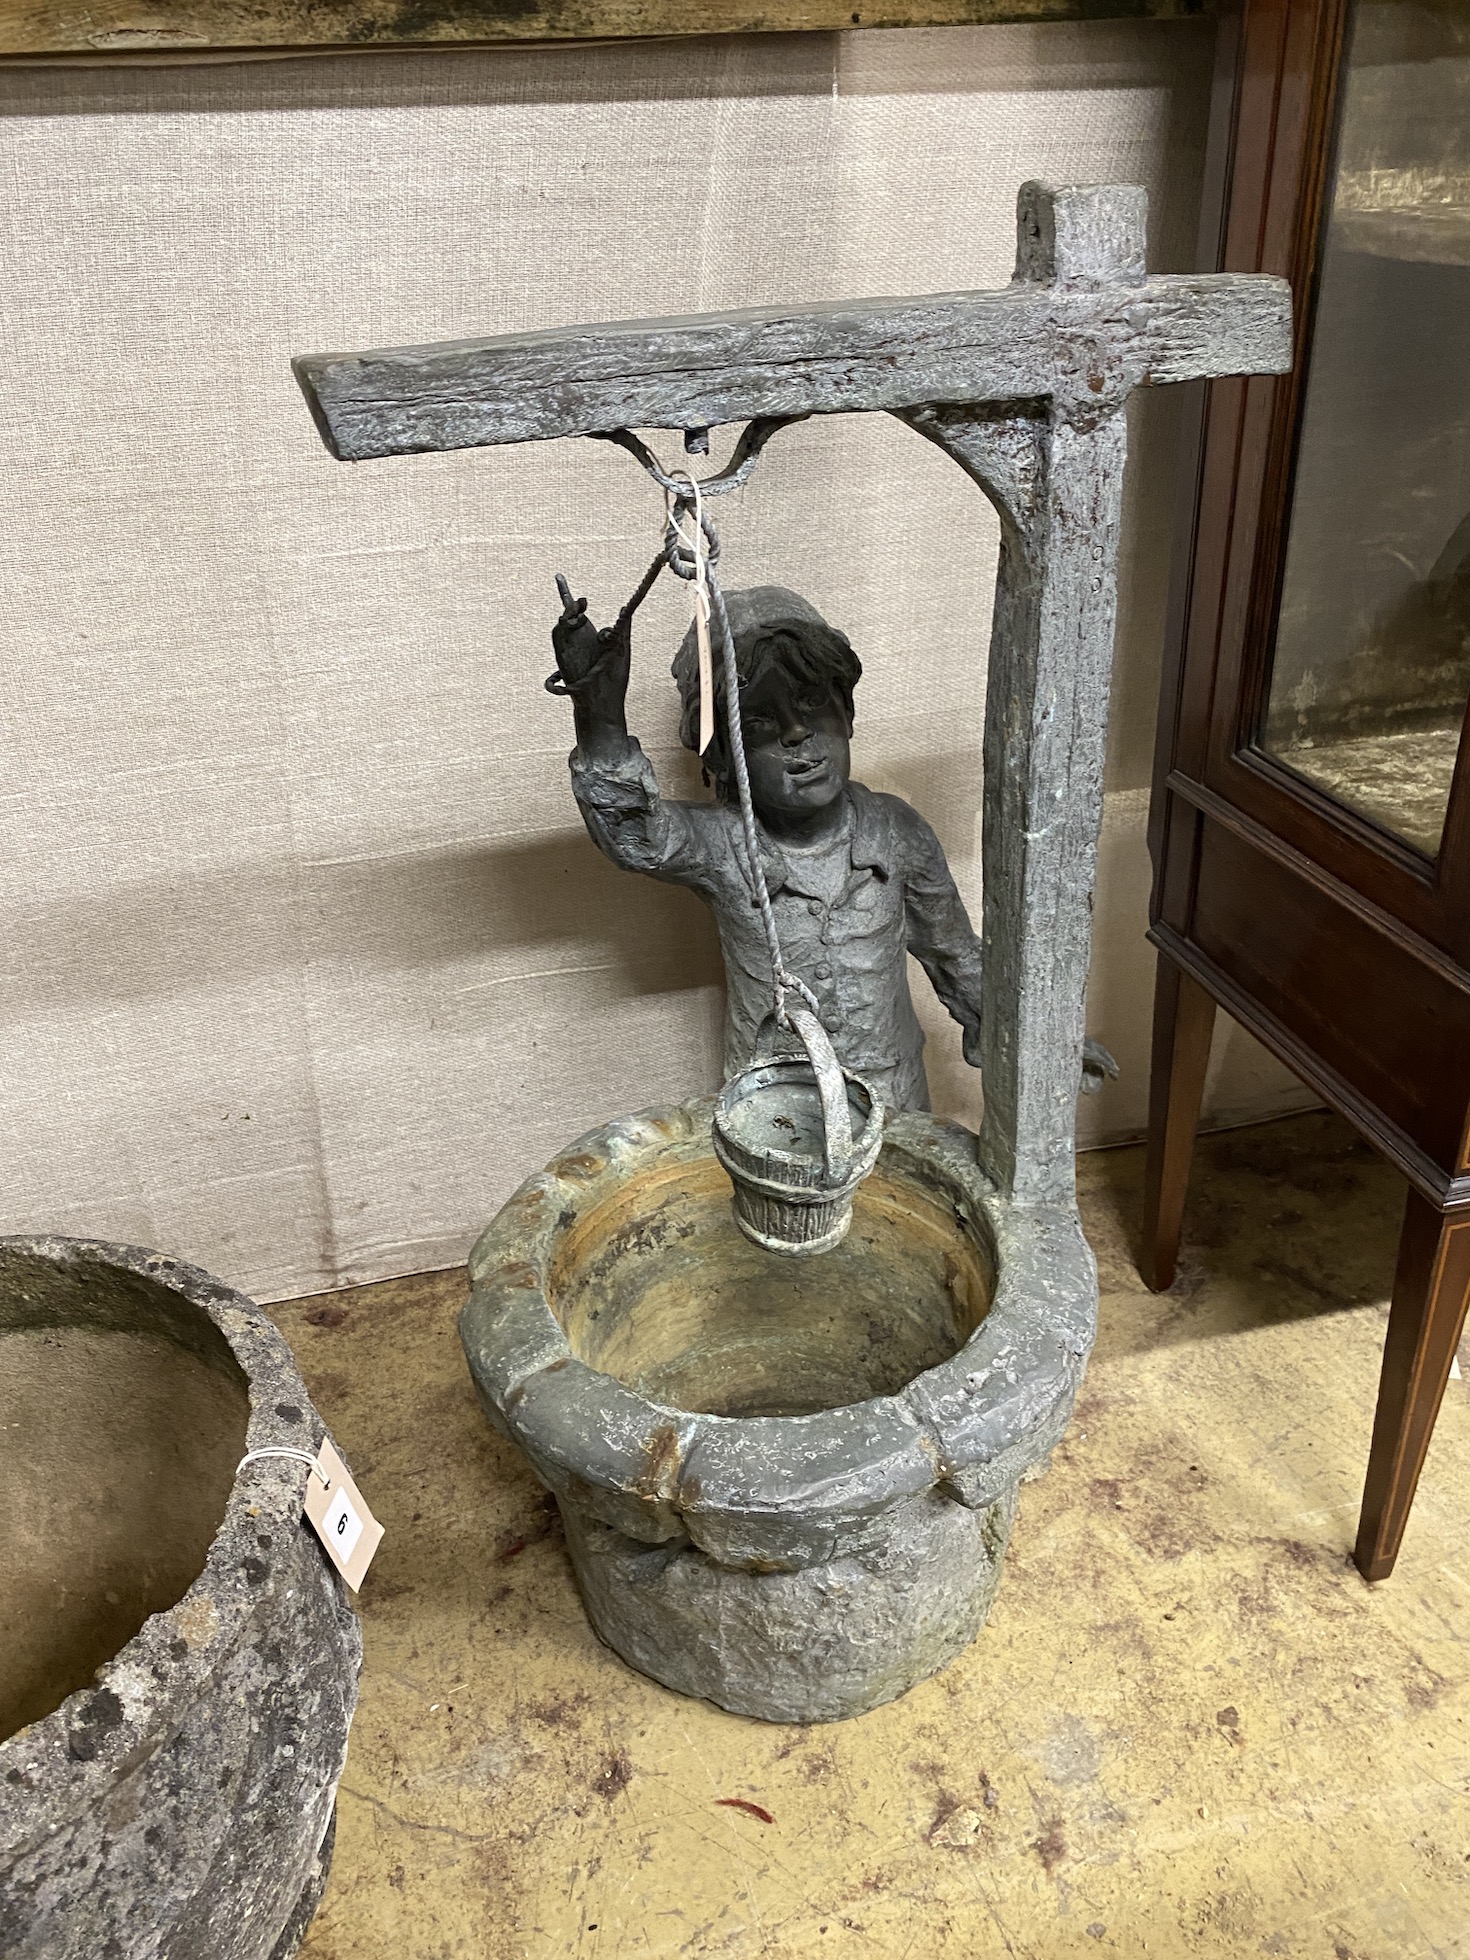 A cast metal garden bird bath modelled as a boy at a well, height 79cm